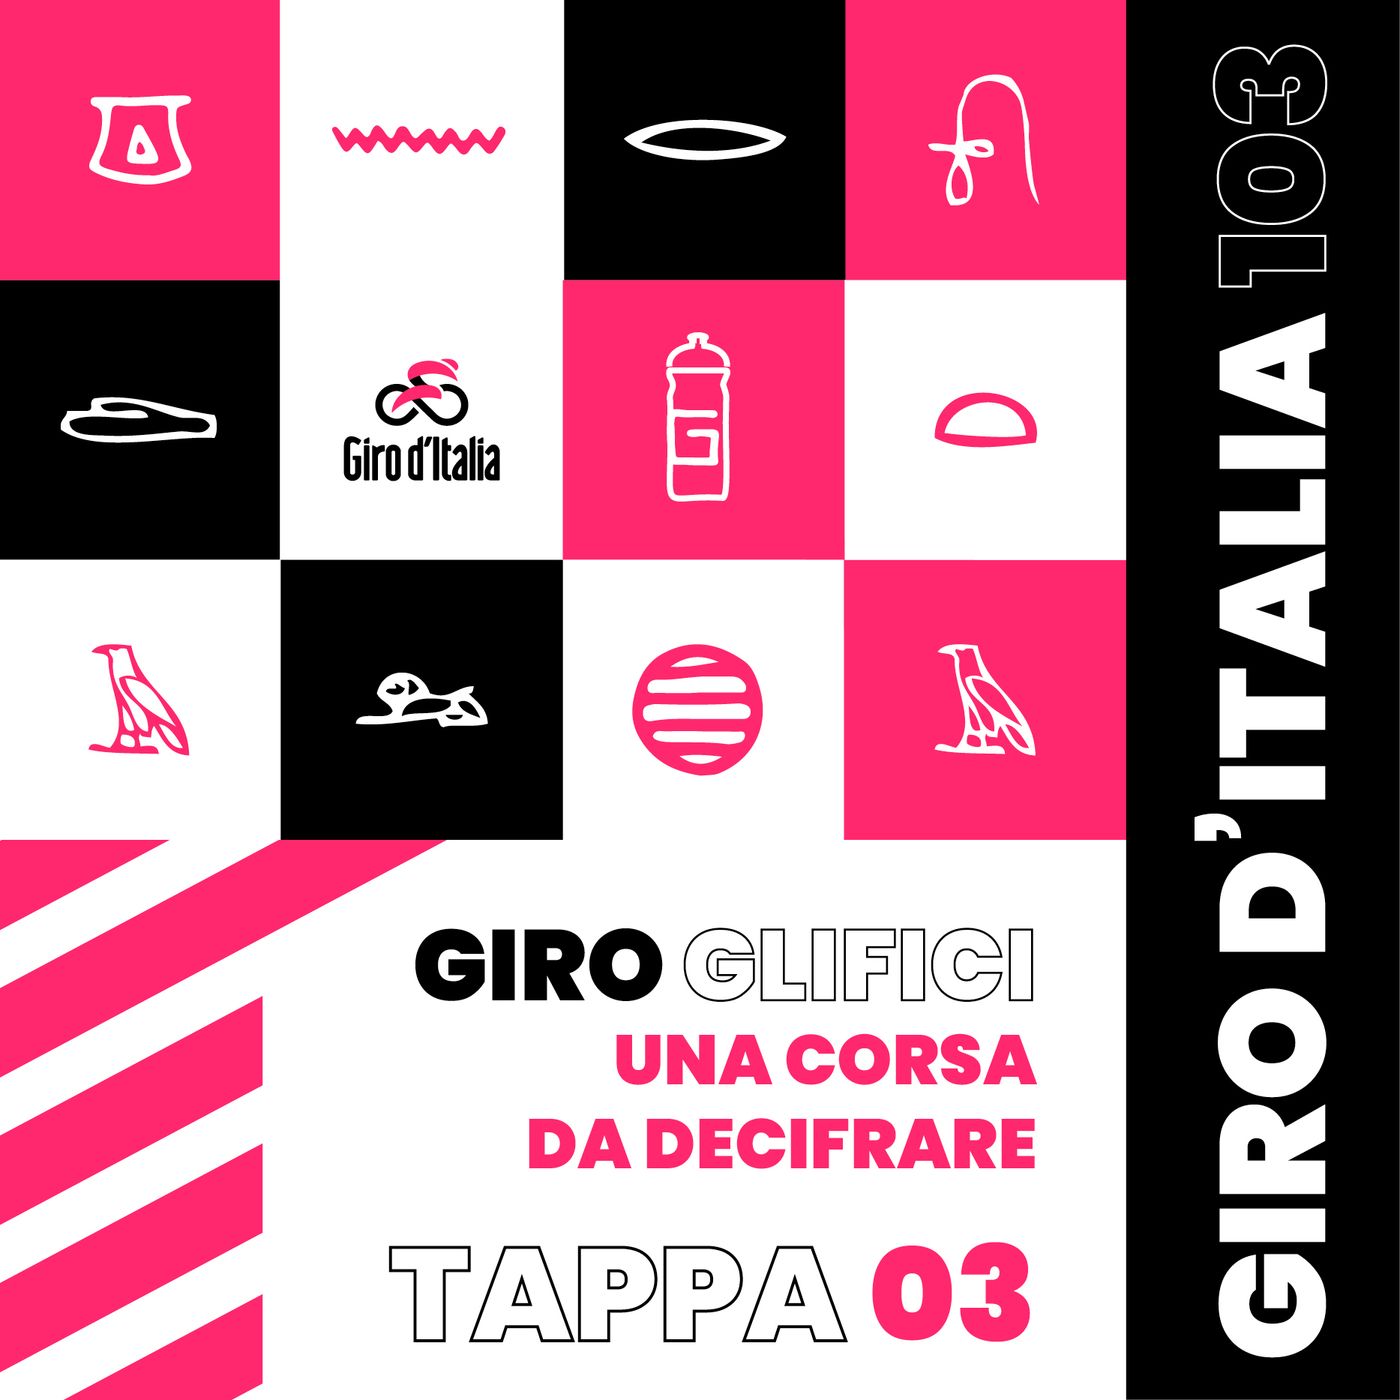 Tappa 03/20: La fucina del Giro